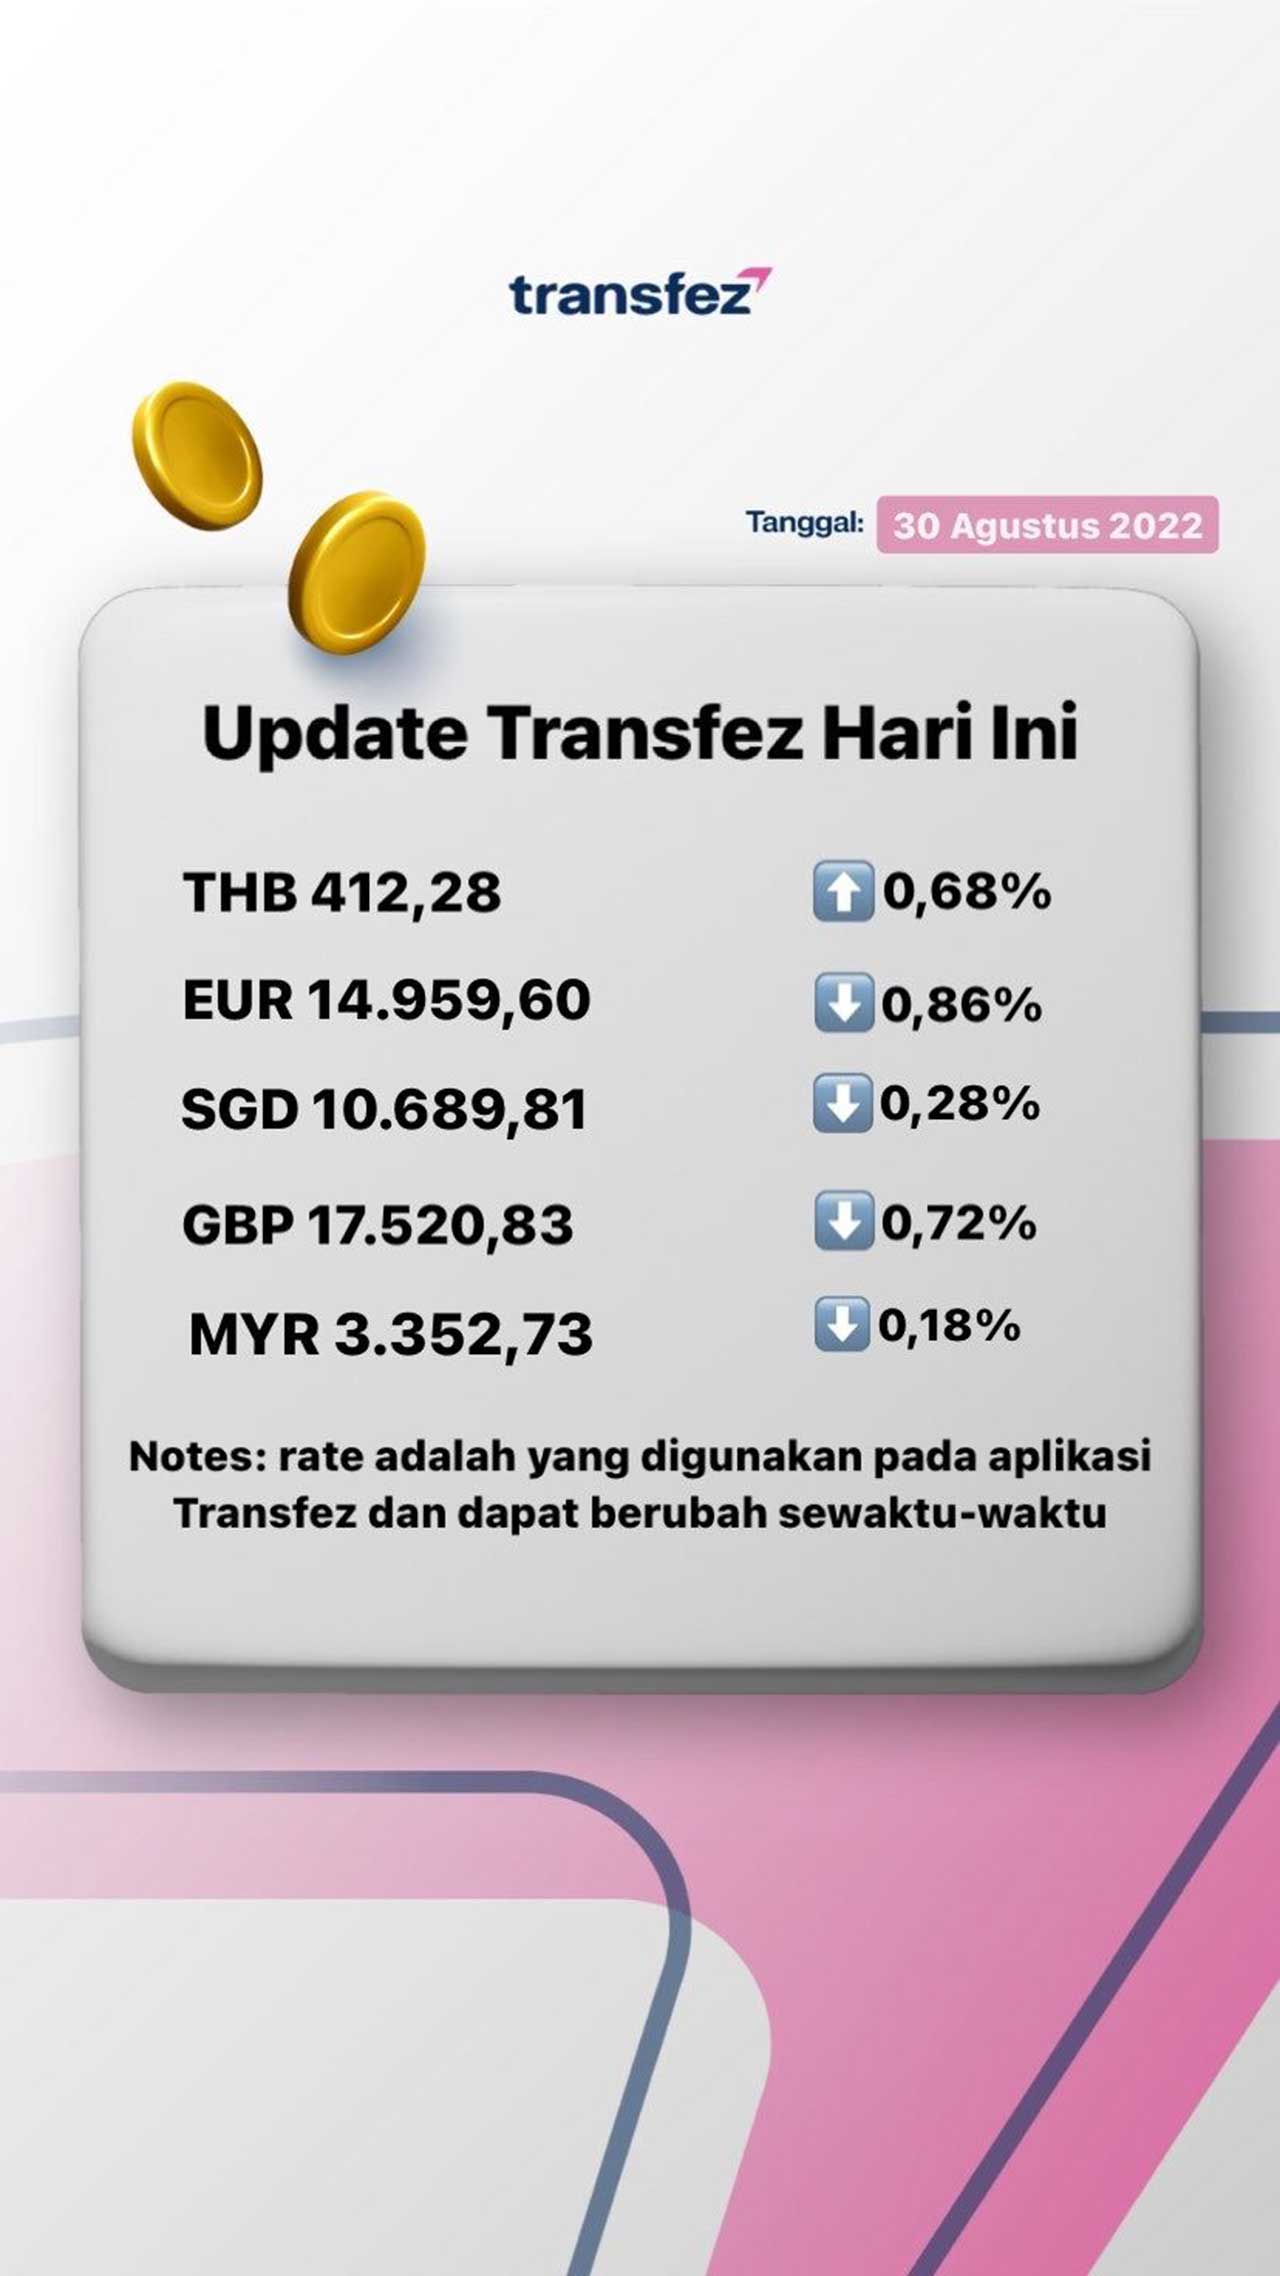 Update Rate Transfez Hari Ini 30 Agustus 2022